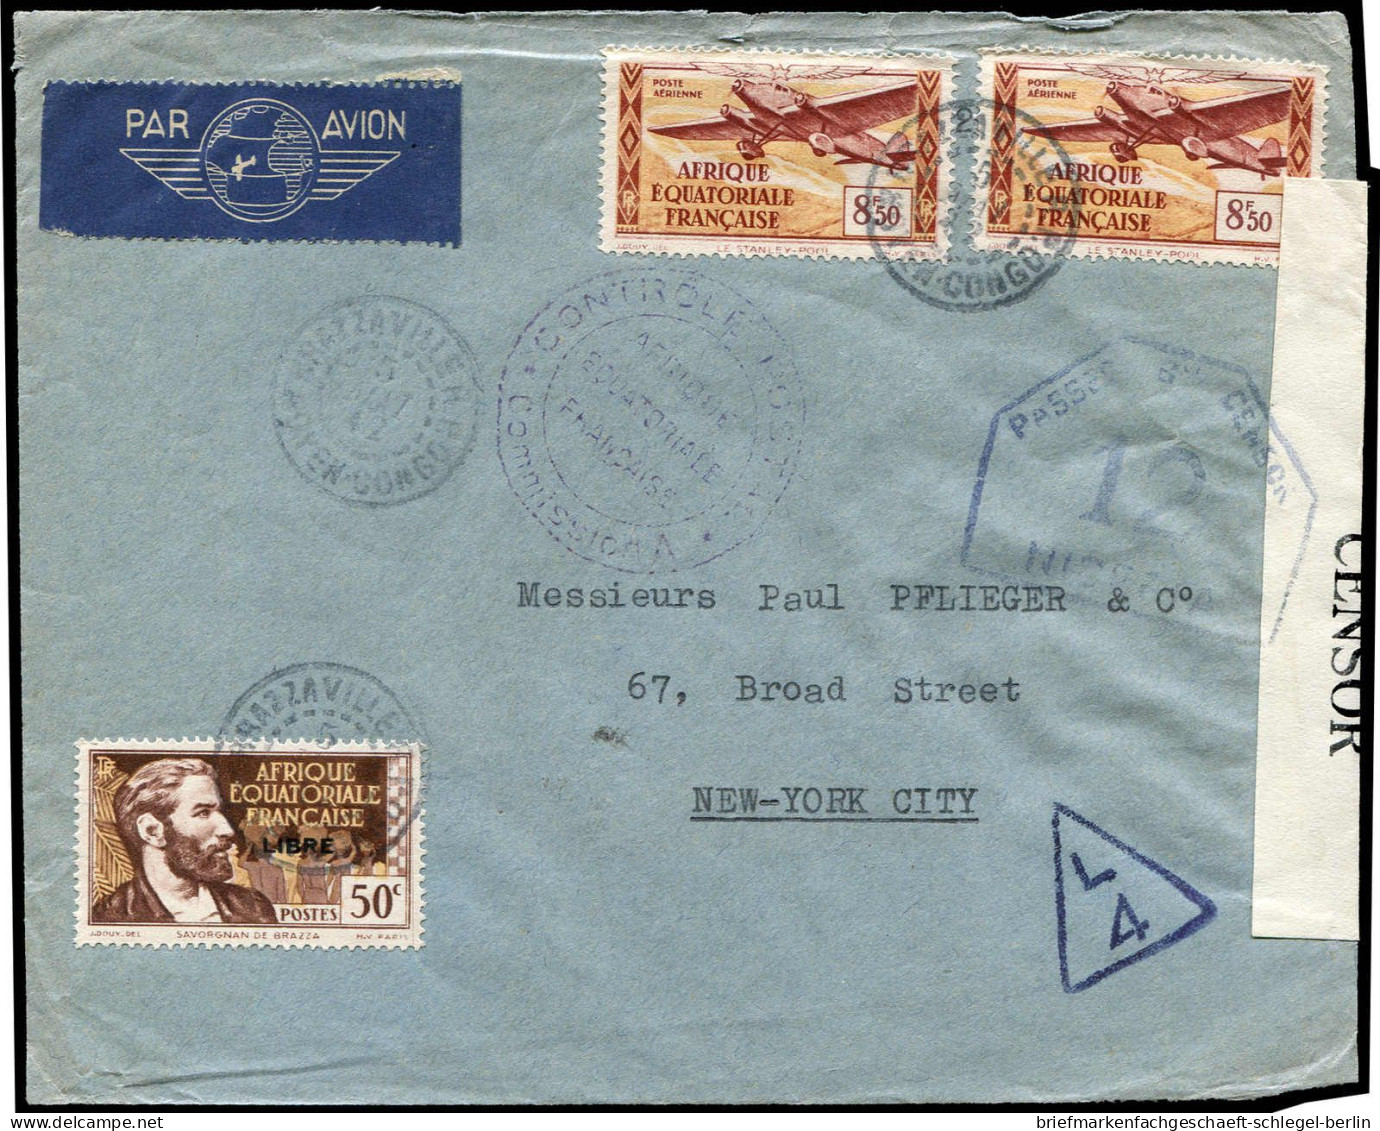 Französisch Äquatorial Afrika, 1942, Brief - Sonstige - Afrika